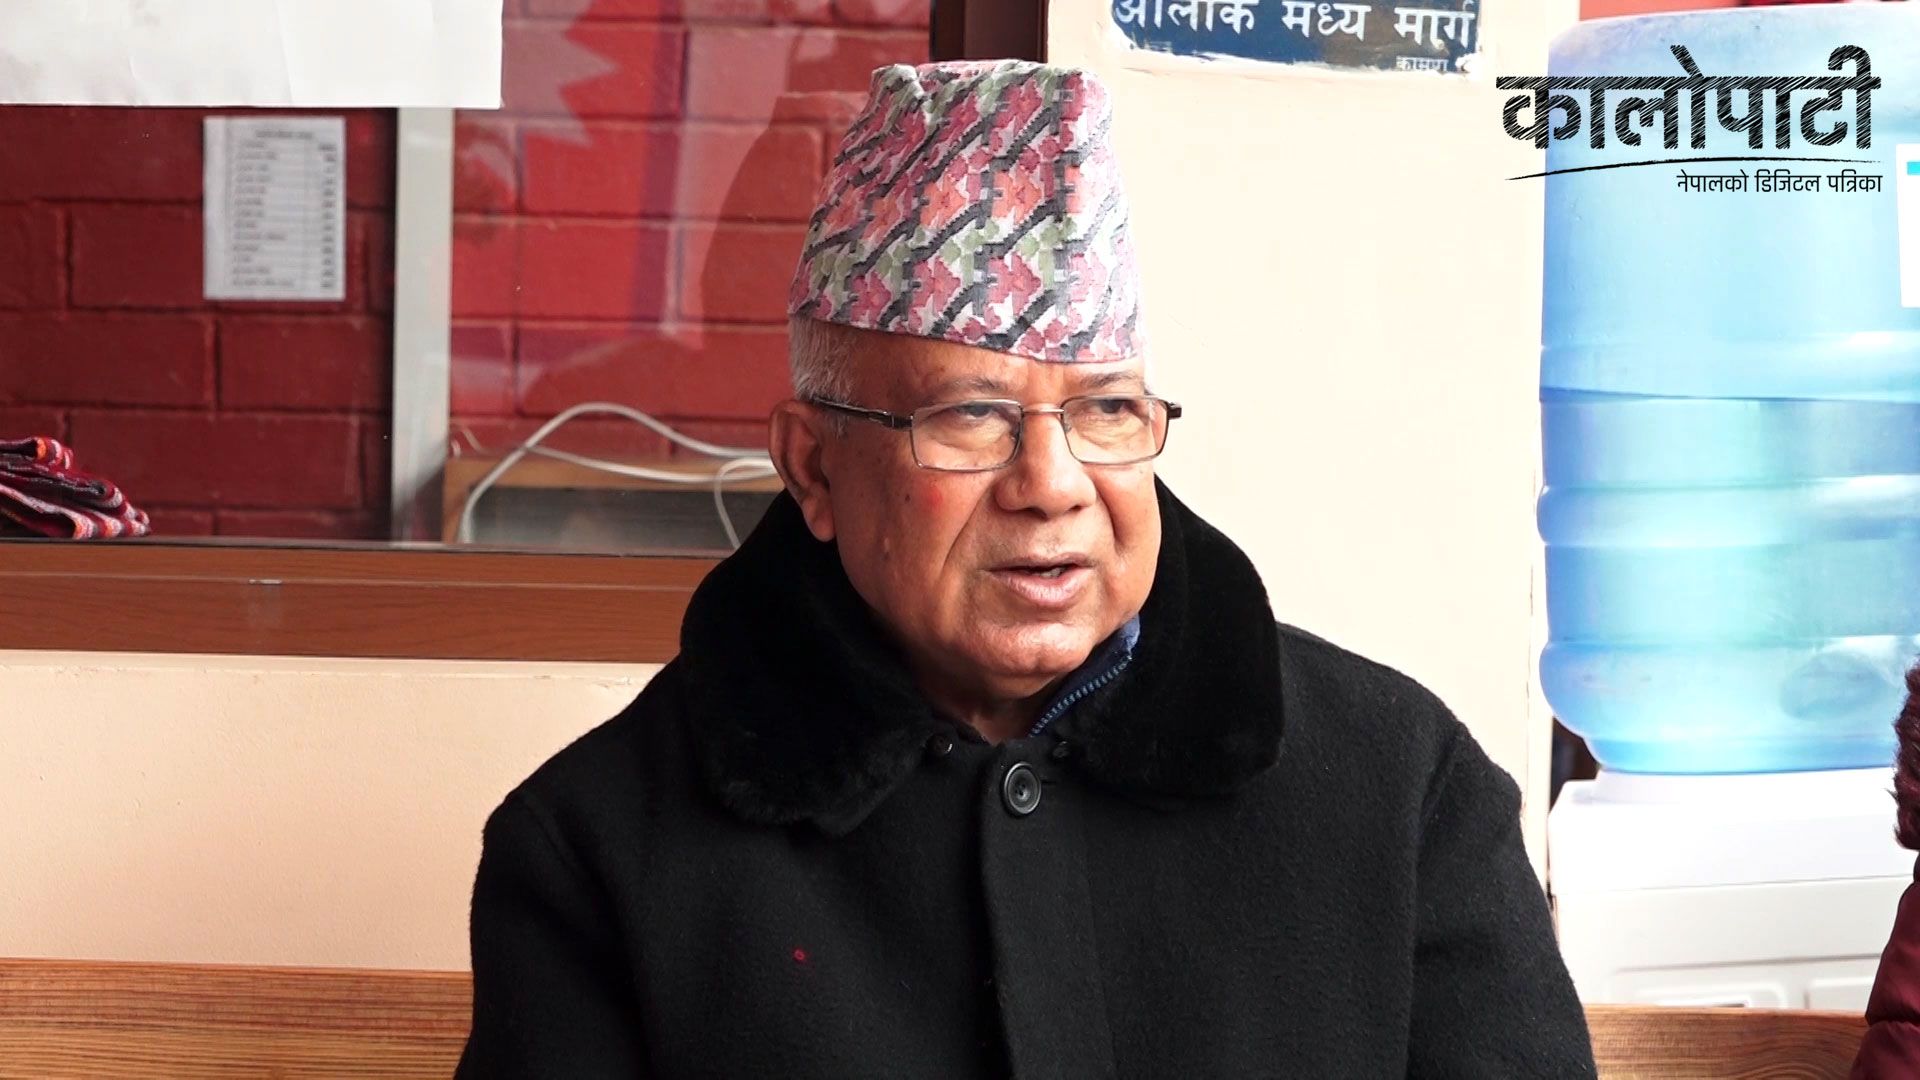 ‘स्थानीय तहको चुनाव संविधान र कानून अनुरुप हुनुपर्ने’ :  अध्यक्ष नेपाल, हेर्नुहोस् भिडियो रिपोर्ट